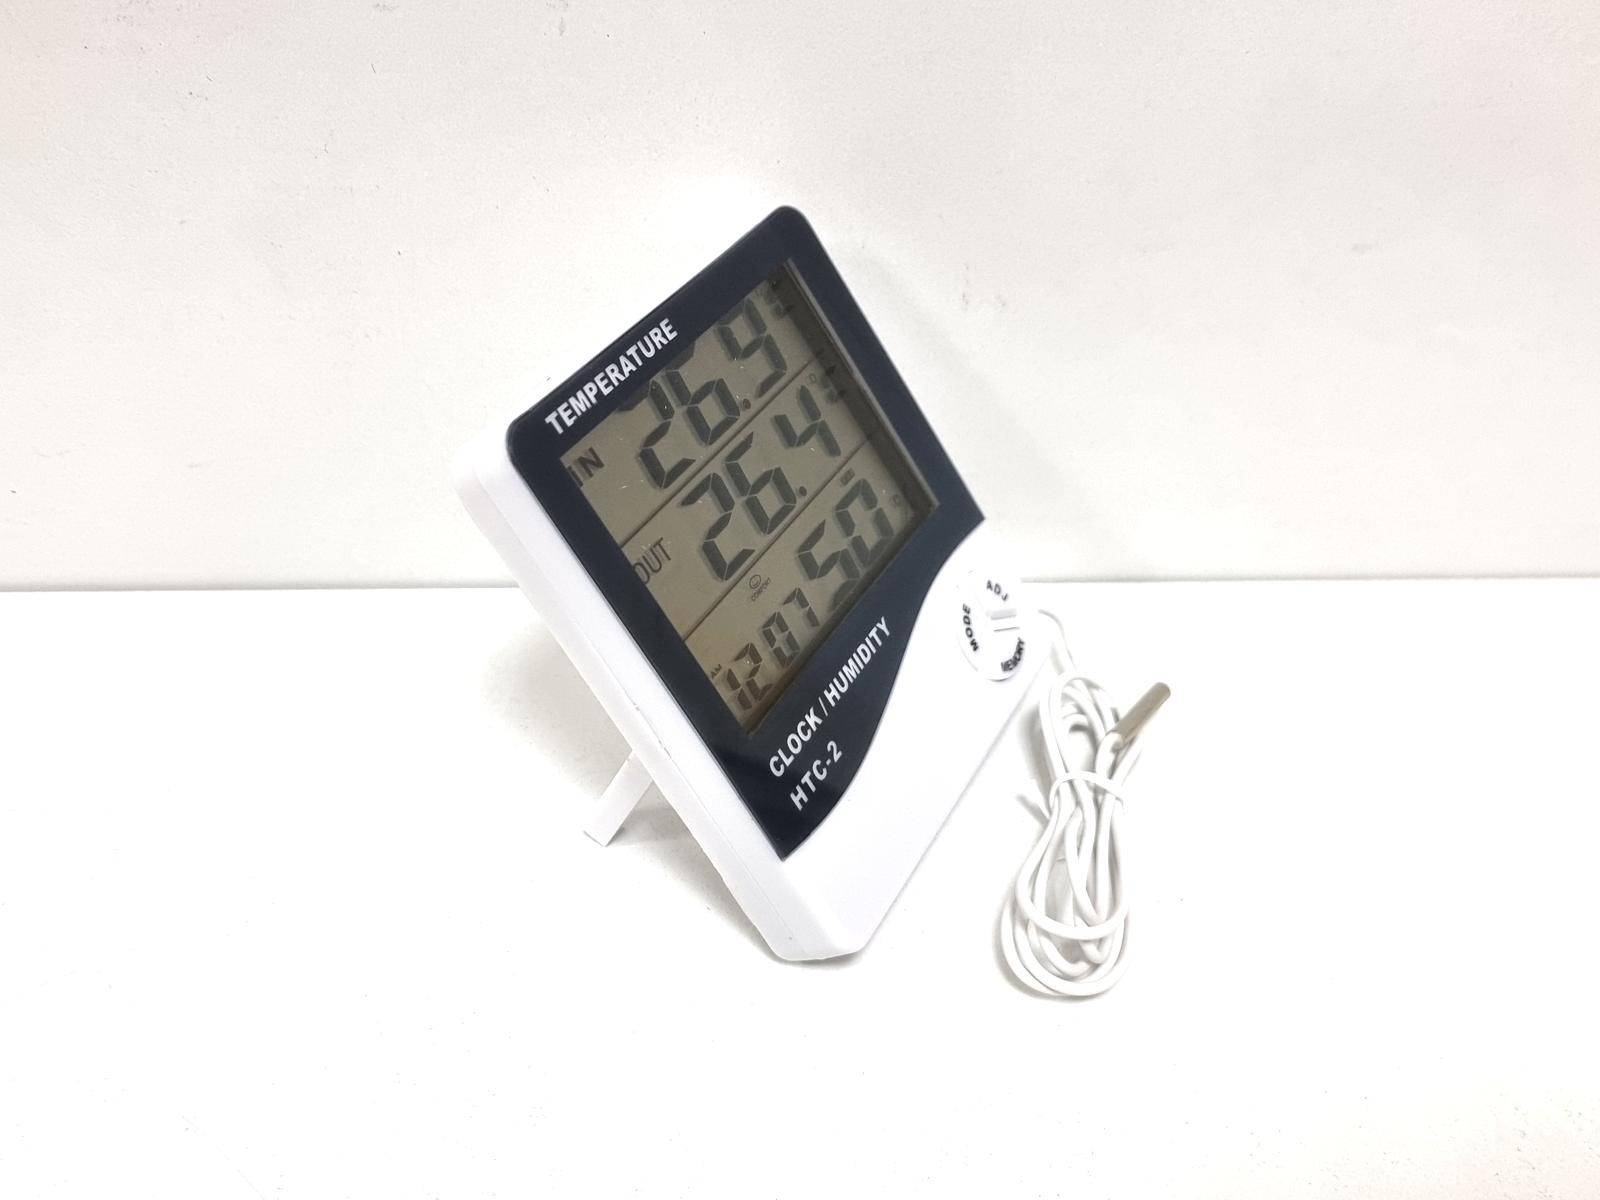 Термогигрометр Sinometer HTC-2